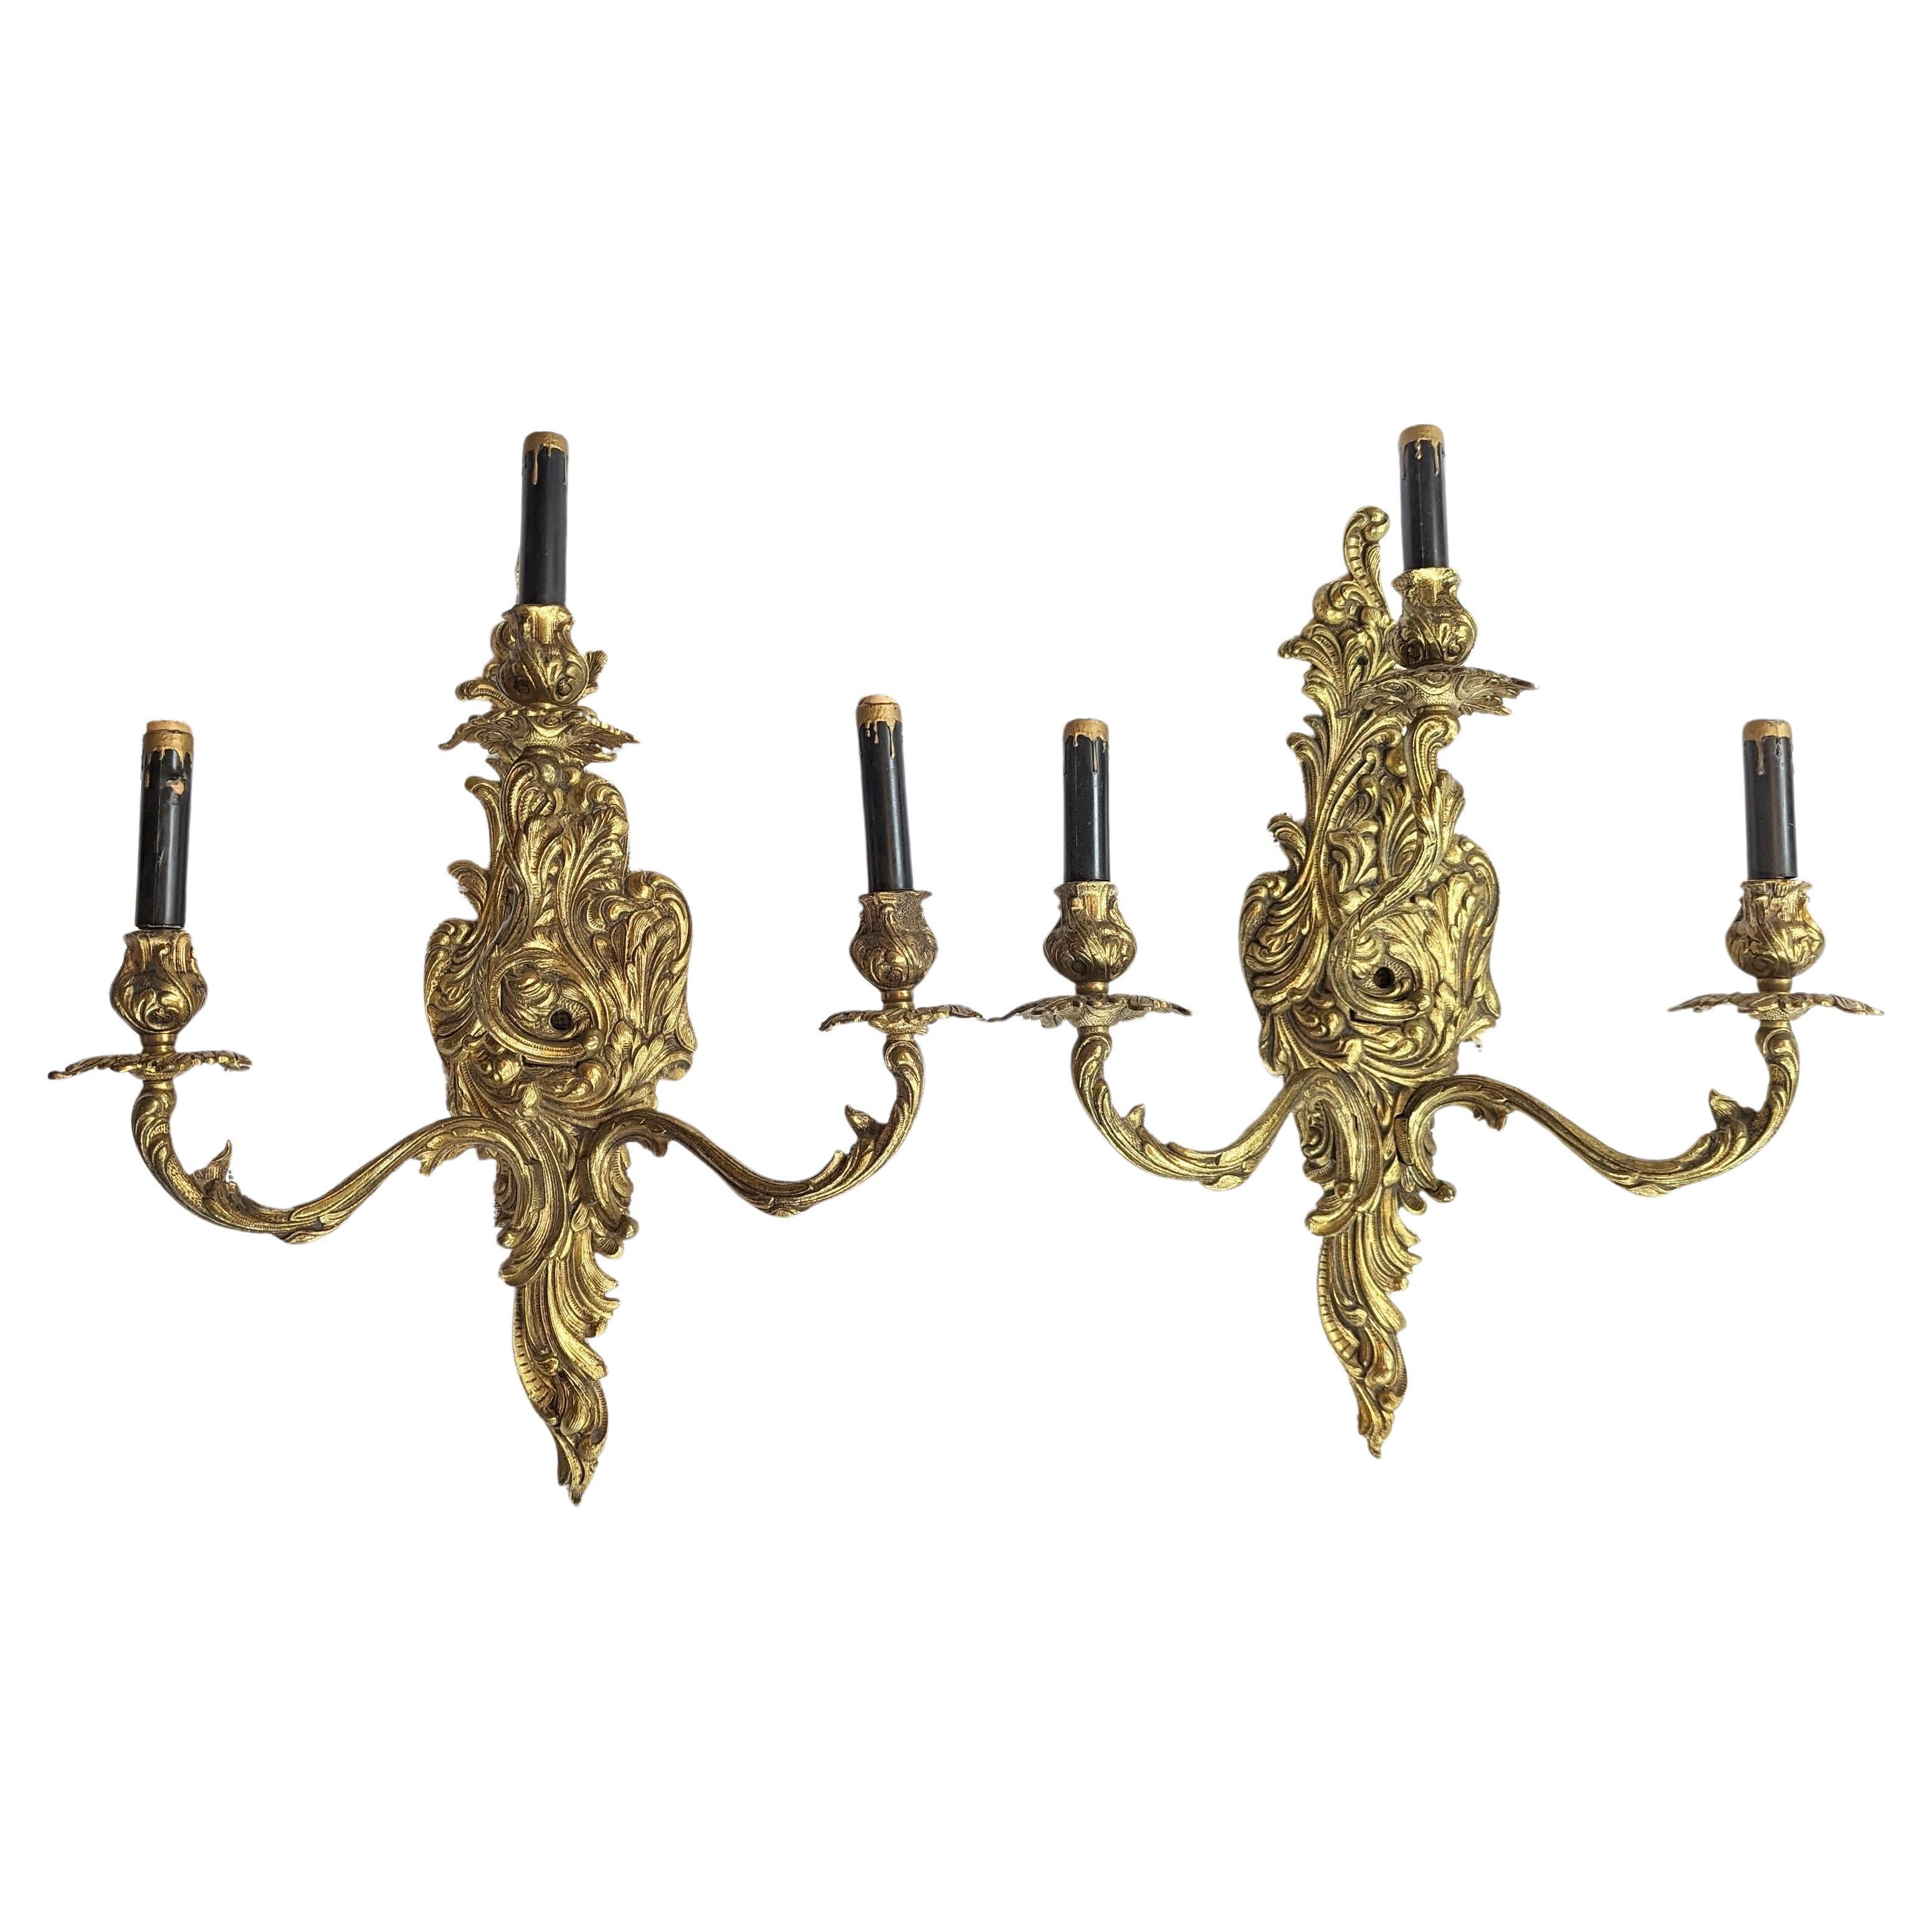 Paar antiker französischer vergoldeter Wandleuchter - 3 Lichter Bewaffneter Wandleuchter Europäisch